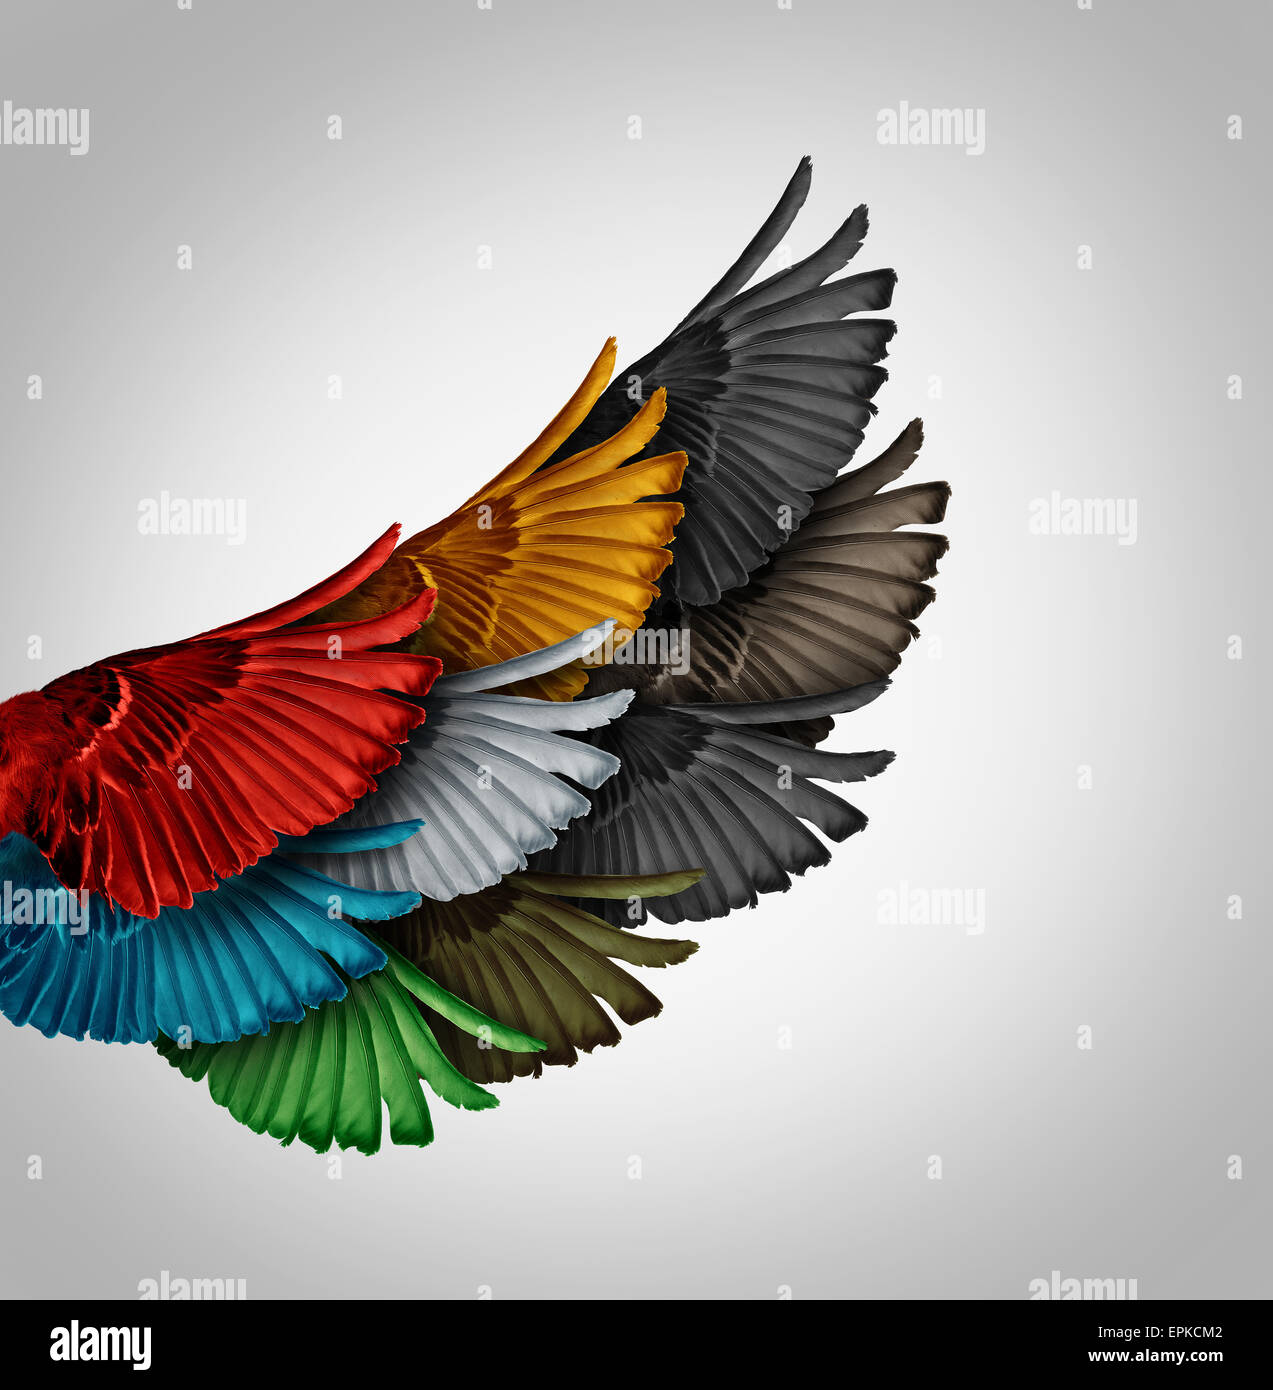 Concept de l'Alliance et l'idée d'entreprise travaillent ensemble comme un groupe diversifié d'ailes d'oiseaux venant en tant qu'un pour former un puissant géant aile comme une métaphore pour la réussite de la coopération la synergie et le soutien aux employés. Banque D'Images